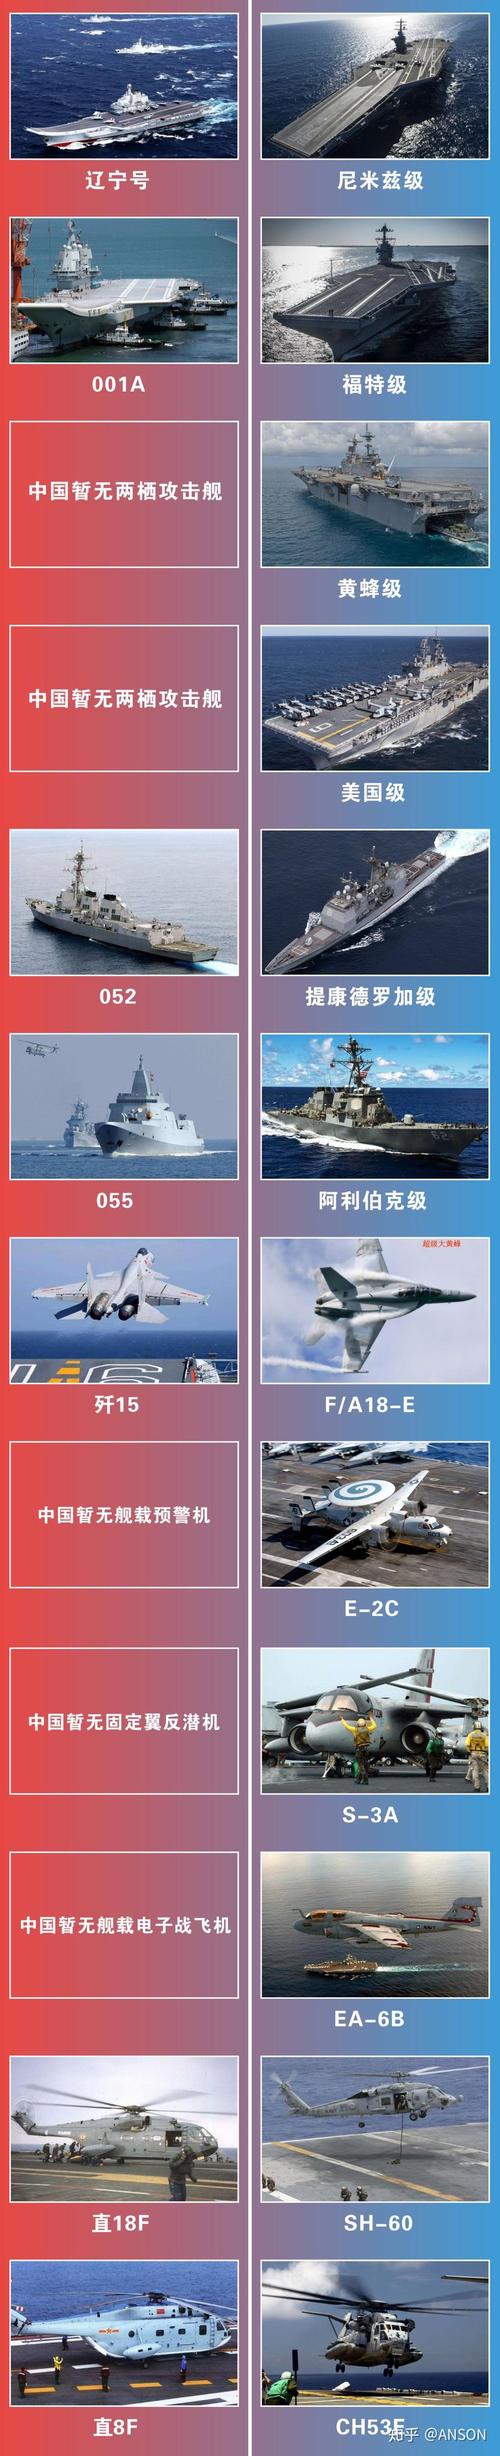 中国vs美国主要数据对比_中国兵力vs美国兵力对比